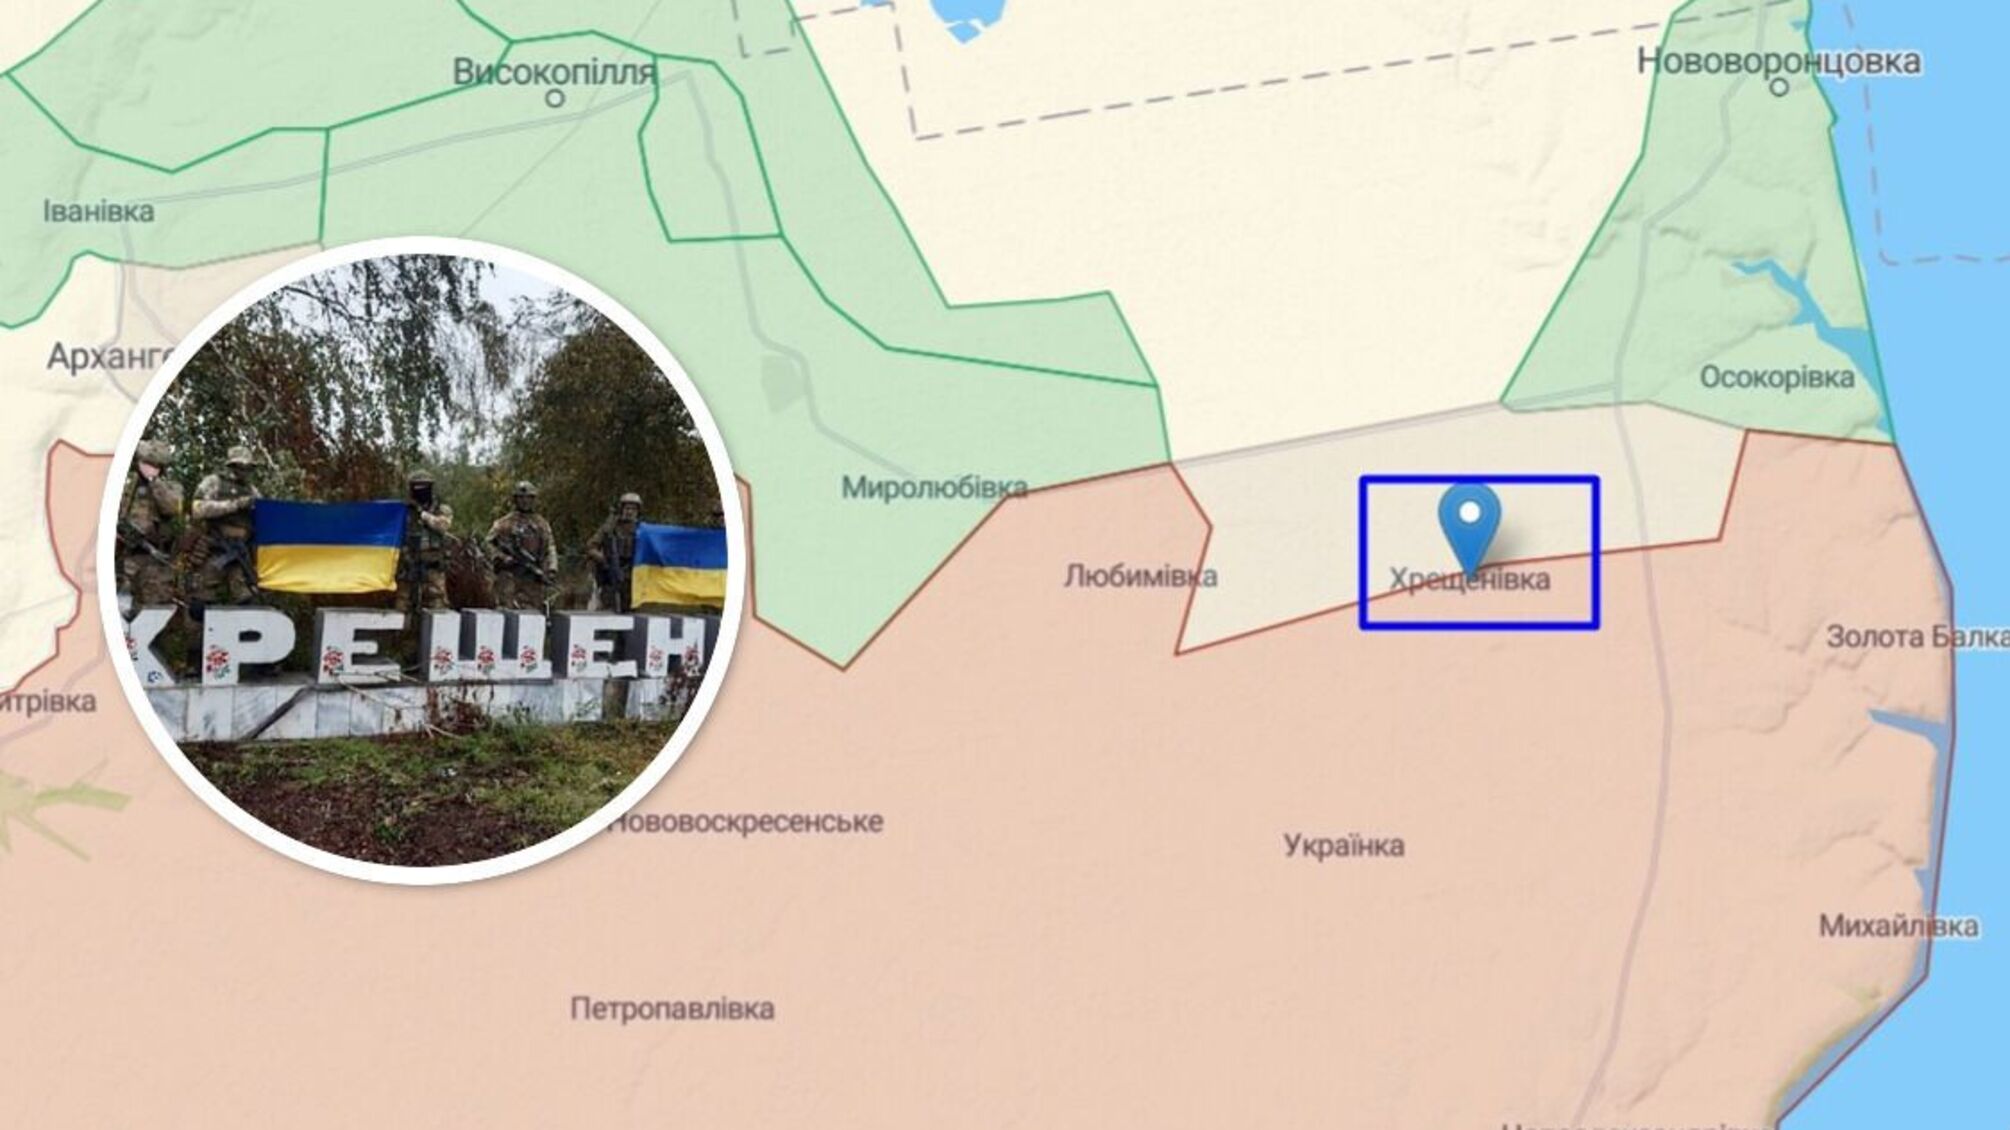 На Херсонщине ВСУ установили флаг в Крещеновке: доказано фото бойцов